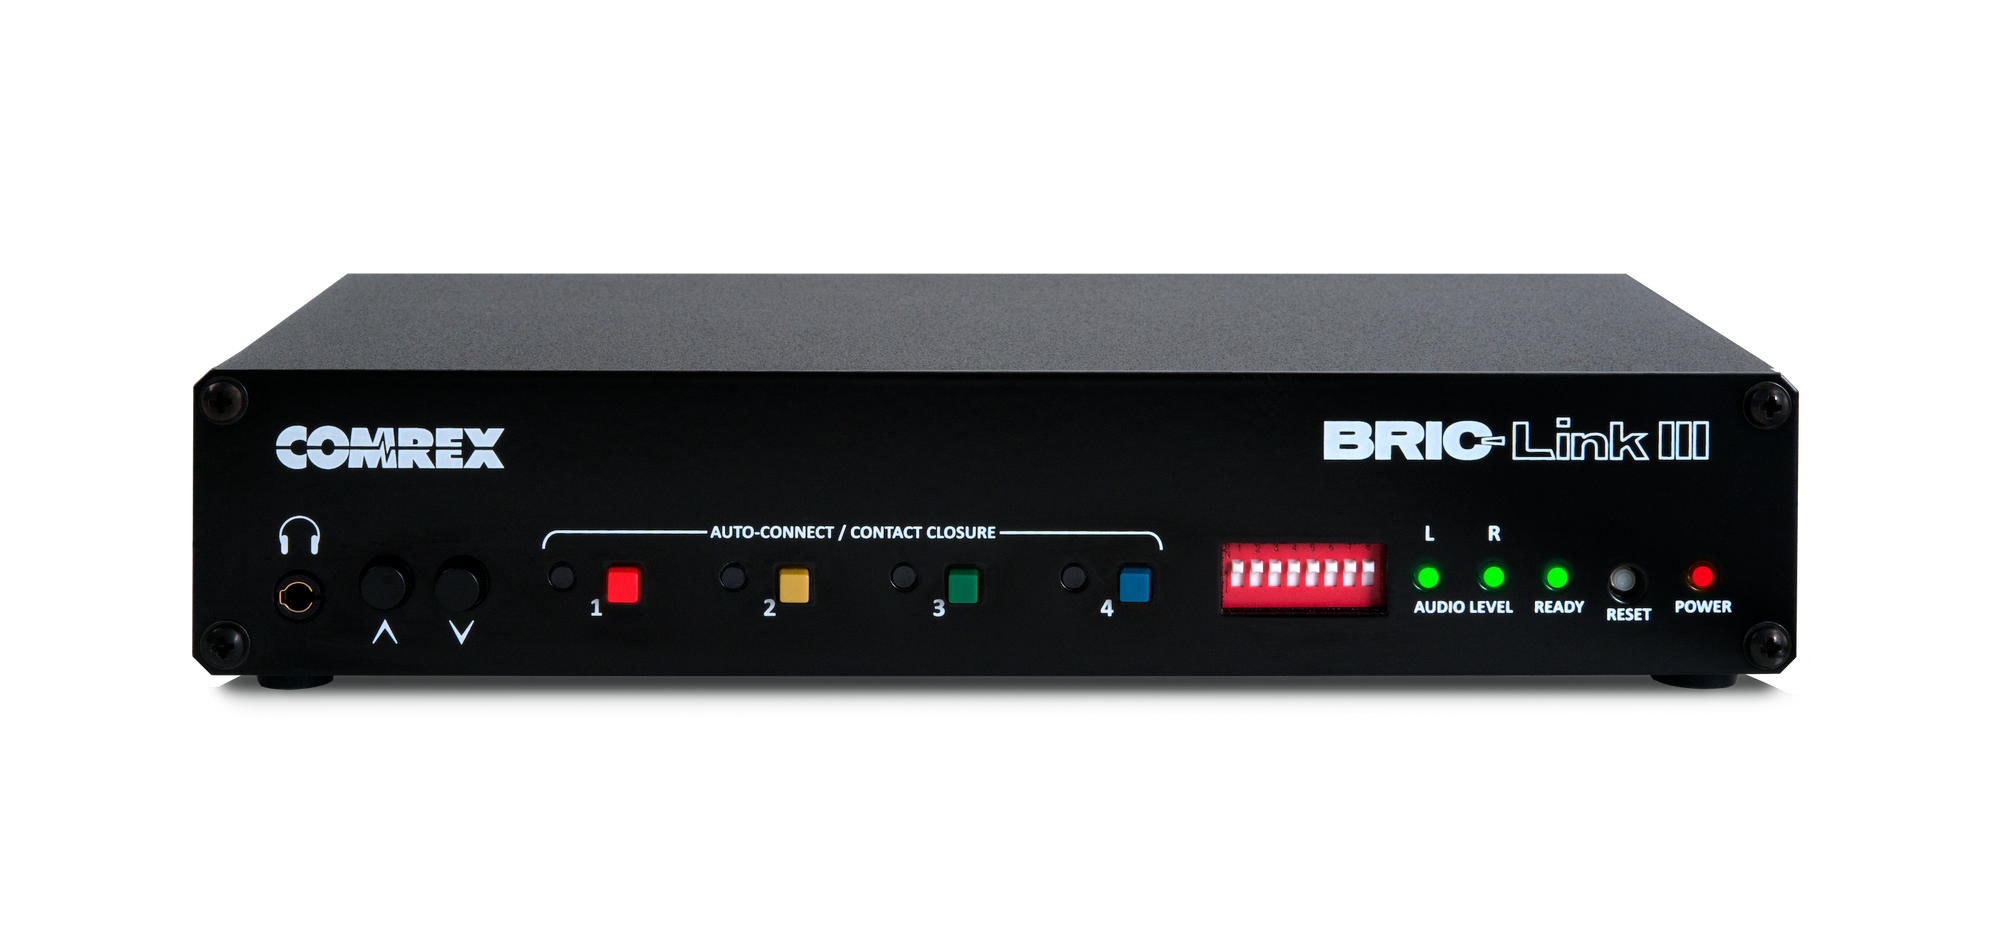 Comrex BRIC-Link III IP Audio Codec - 305broadcast